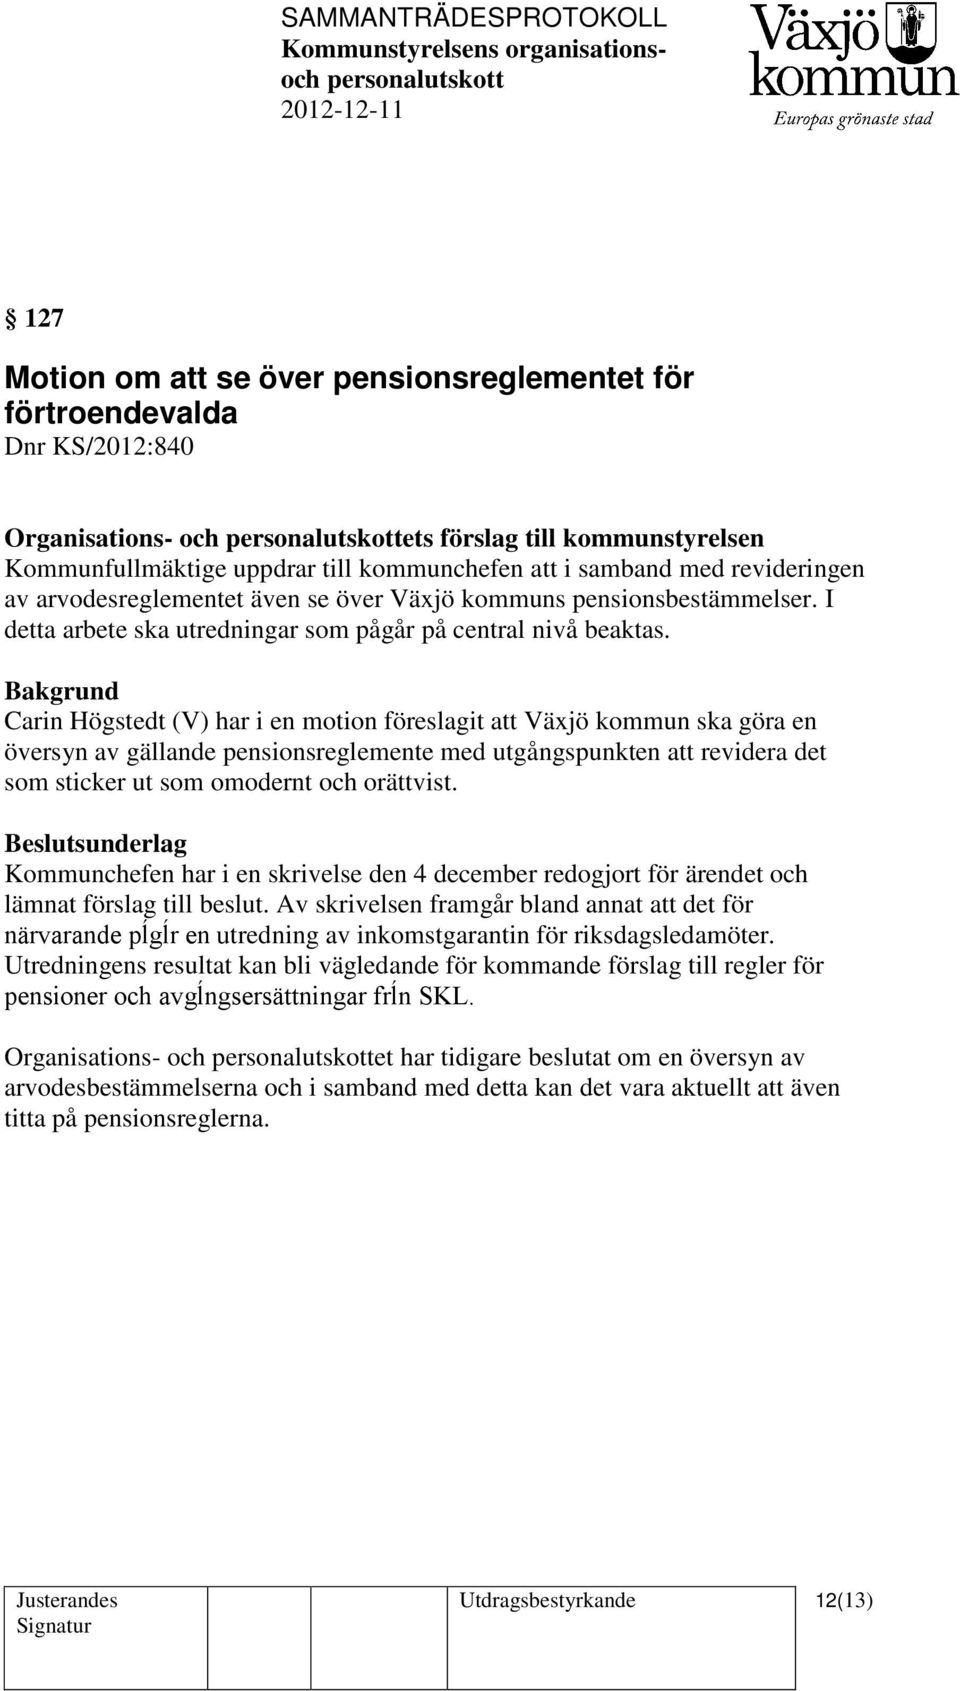 Carin Högstedt (V) har i en motion föreslagit att Växjö kommun ska göra en översyn av gällande pensionsreglemente med utgångspunkten att revidera det som sticker ut som omodernt och orättvist.